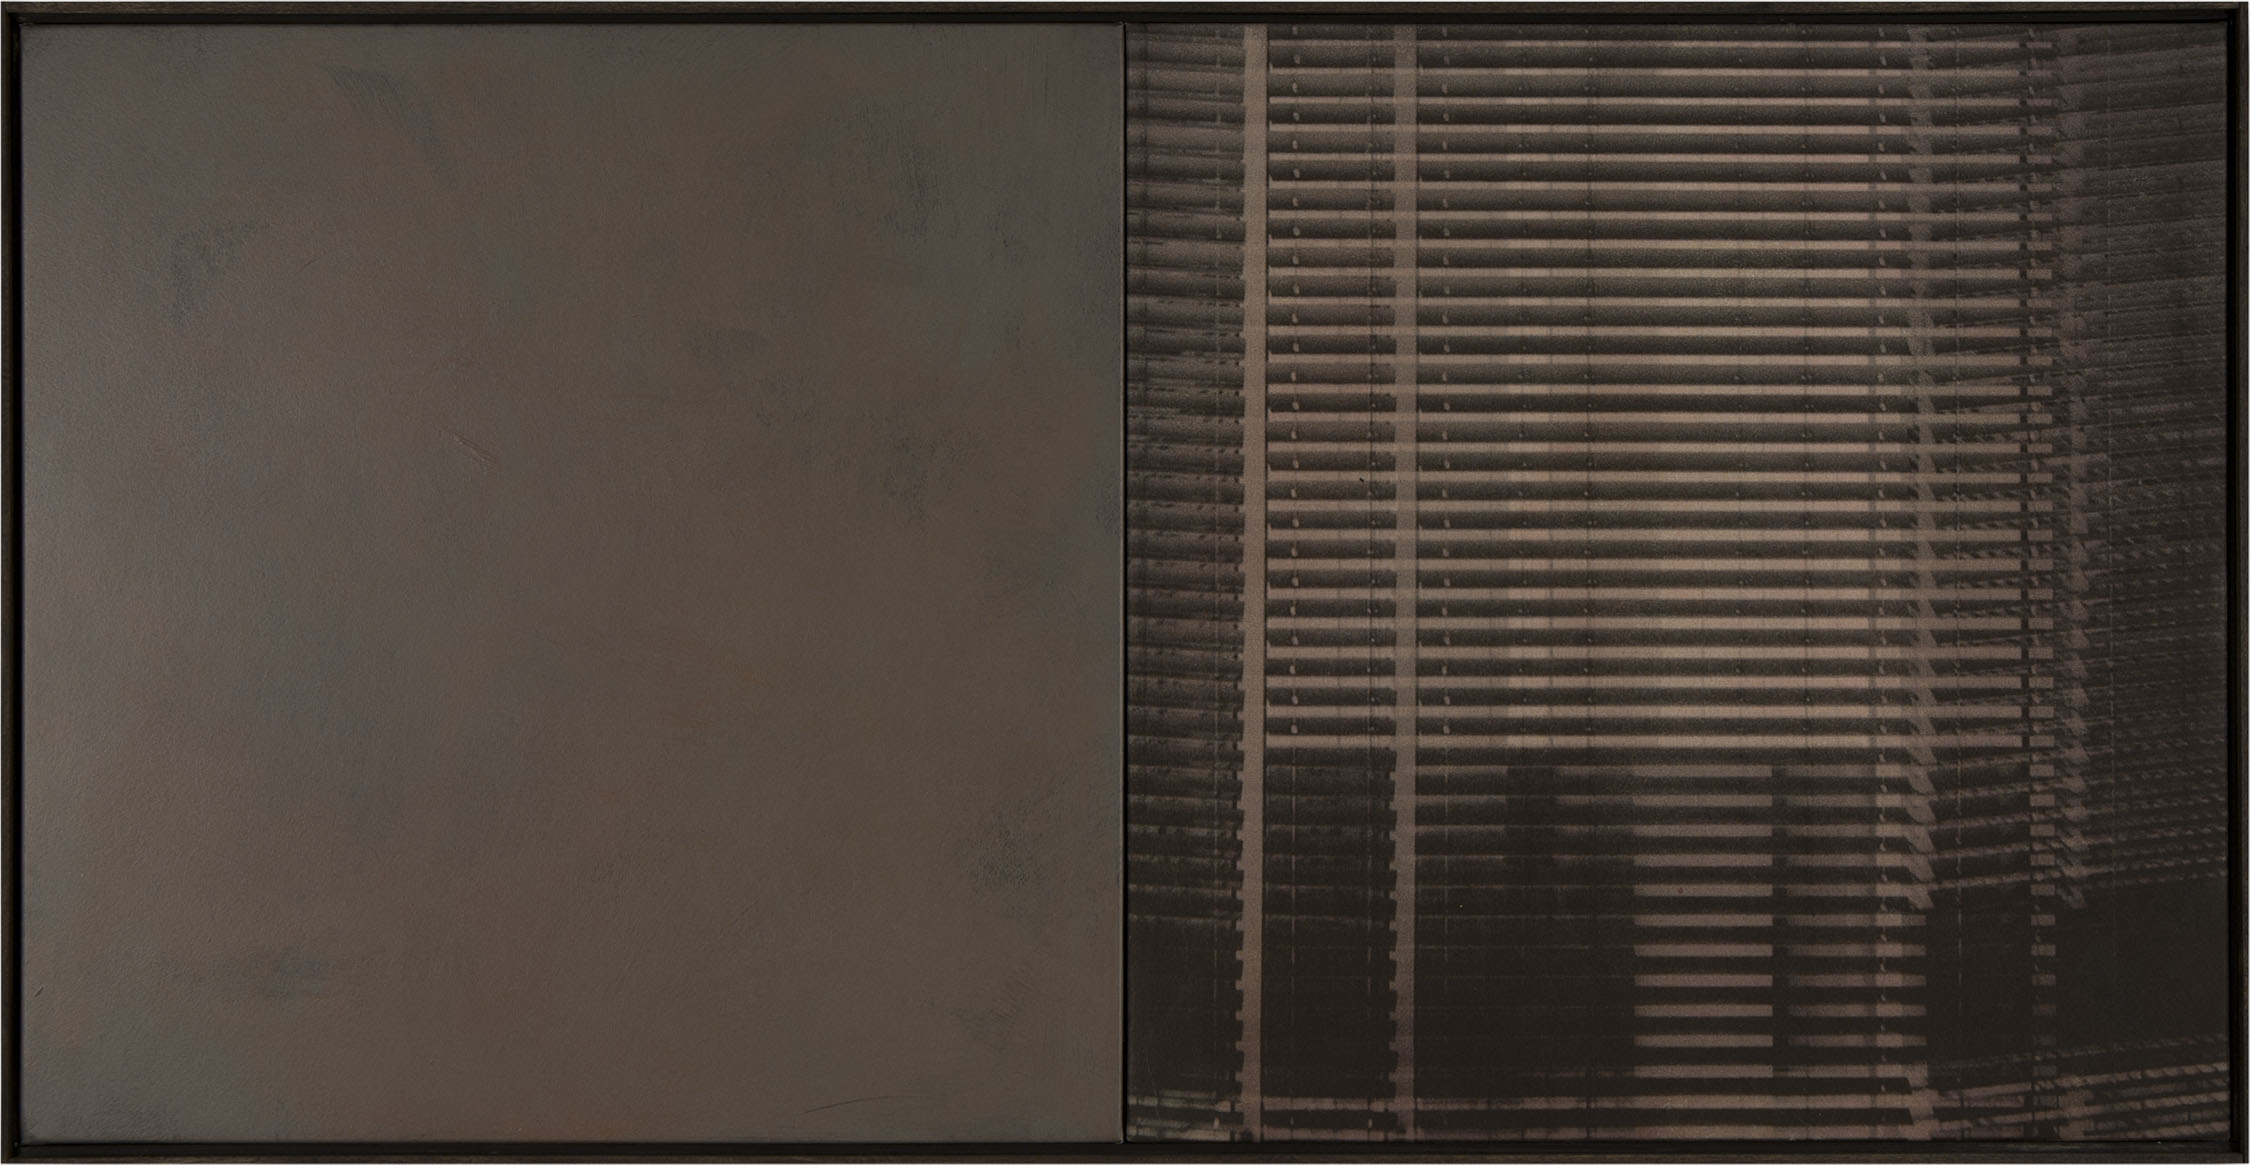 Claudia Peill, Rem 2, 2014, acrilico su tela e base fotografica, 60x120 cm